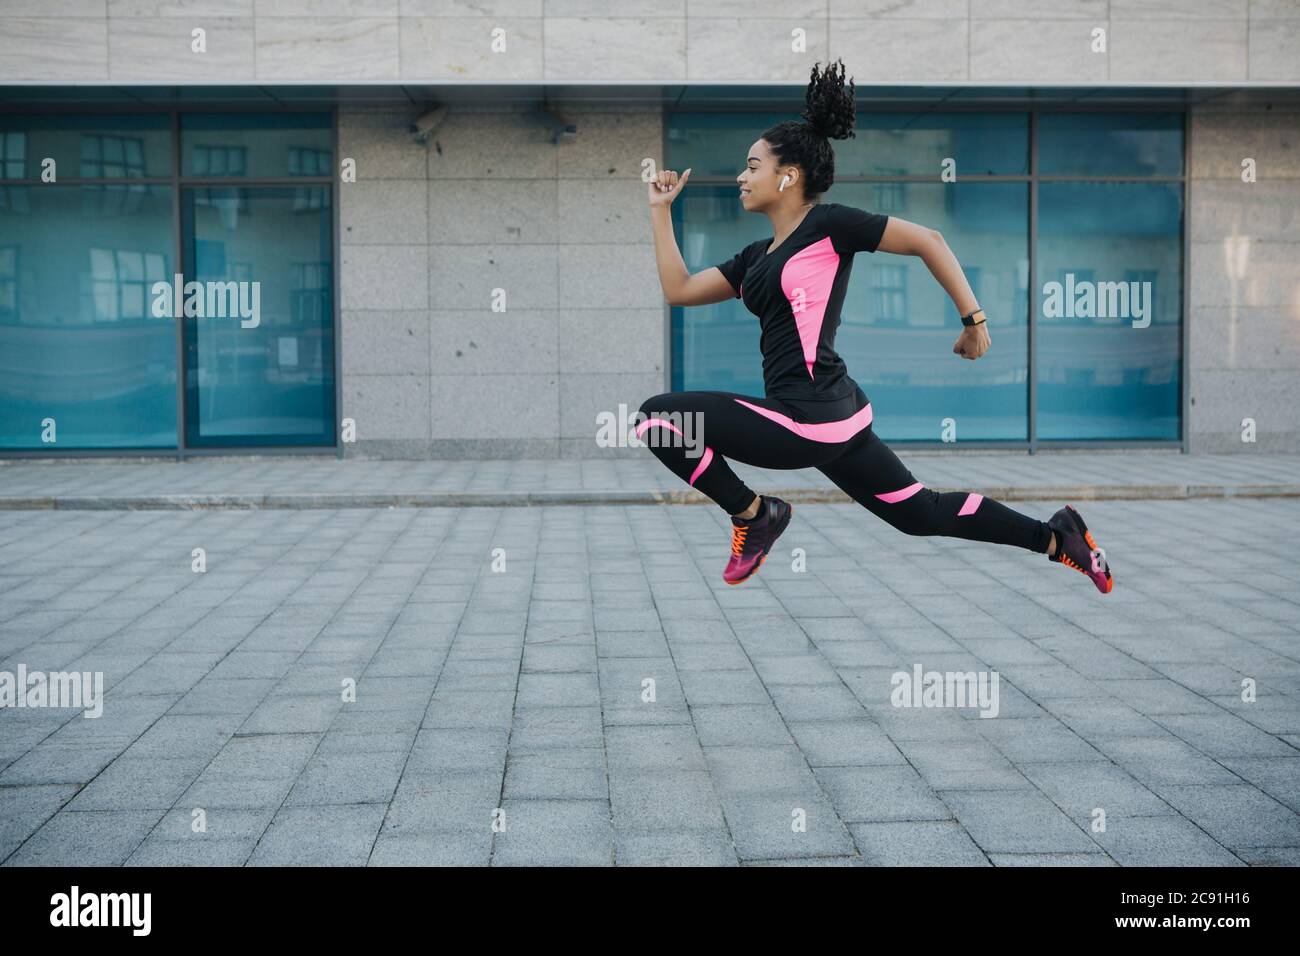 Ejercicio por pérdida de peso. Mujer en ropa deportiva con auriculares inalámbricos congelados en el aire, saltar mientras corres Foto de stock